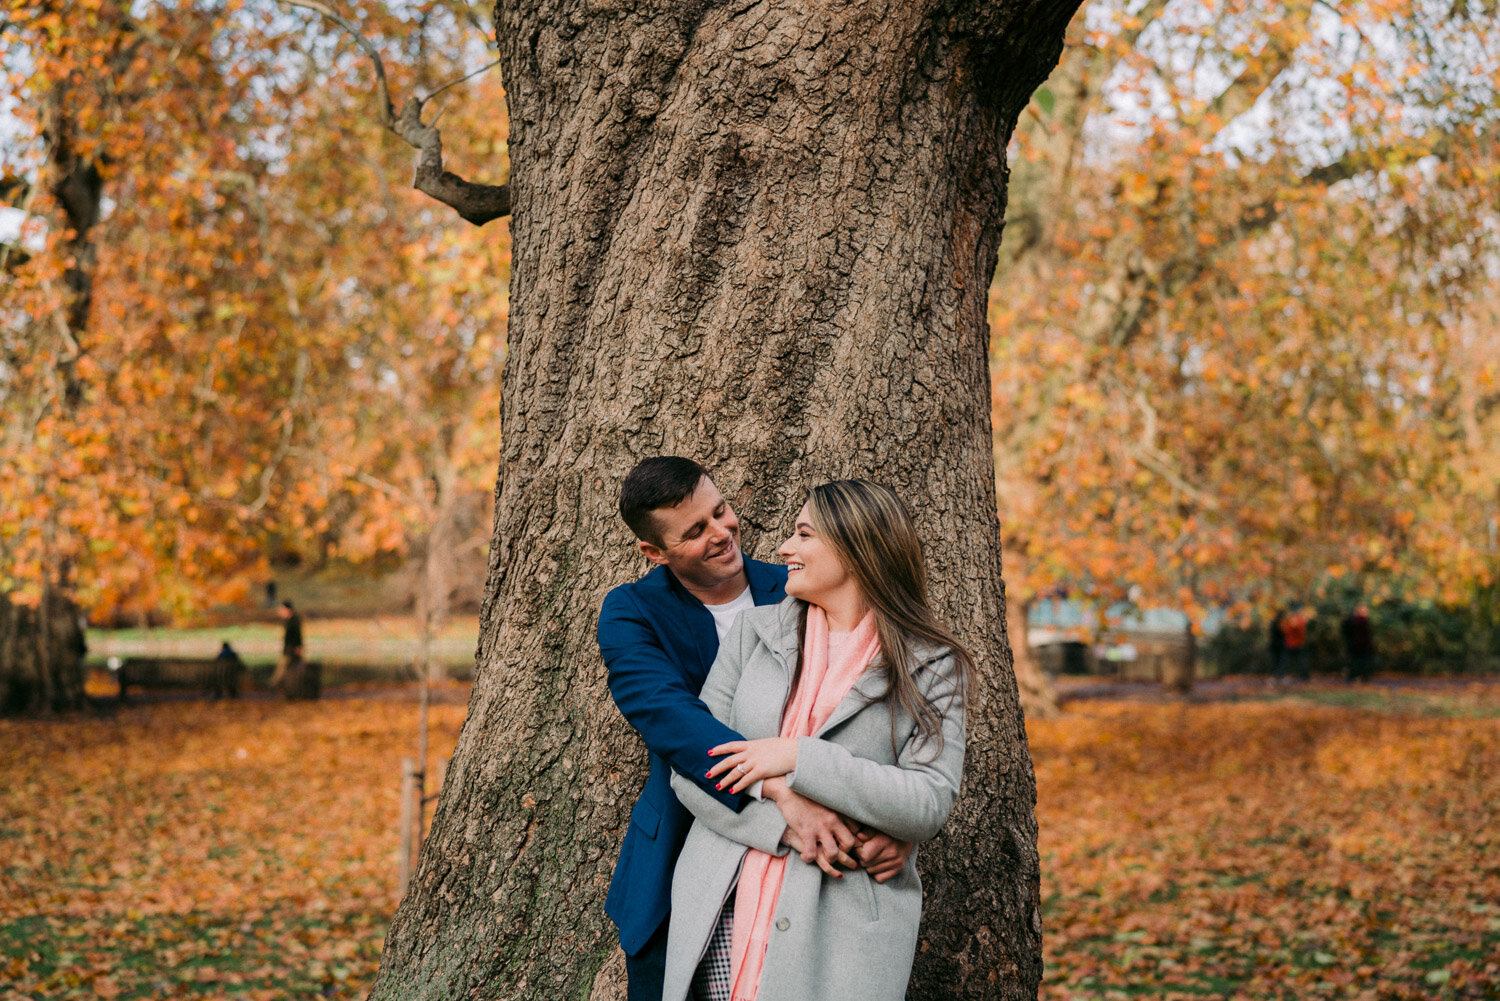 London surprise proposal photographer